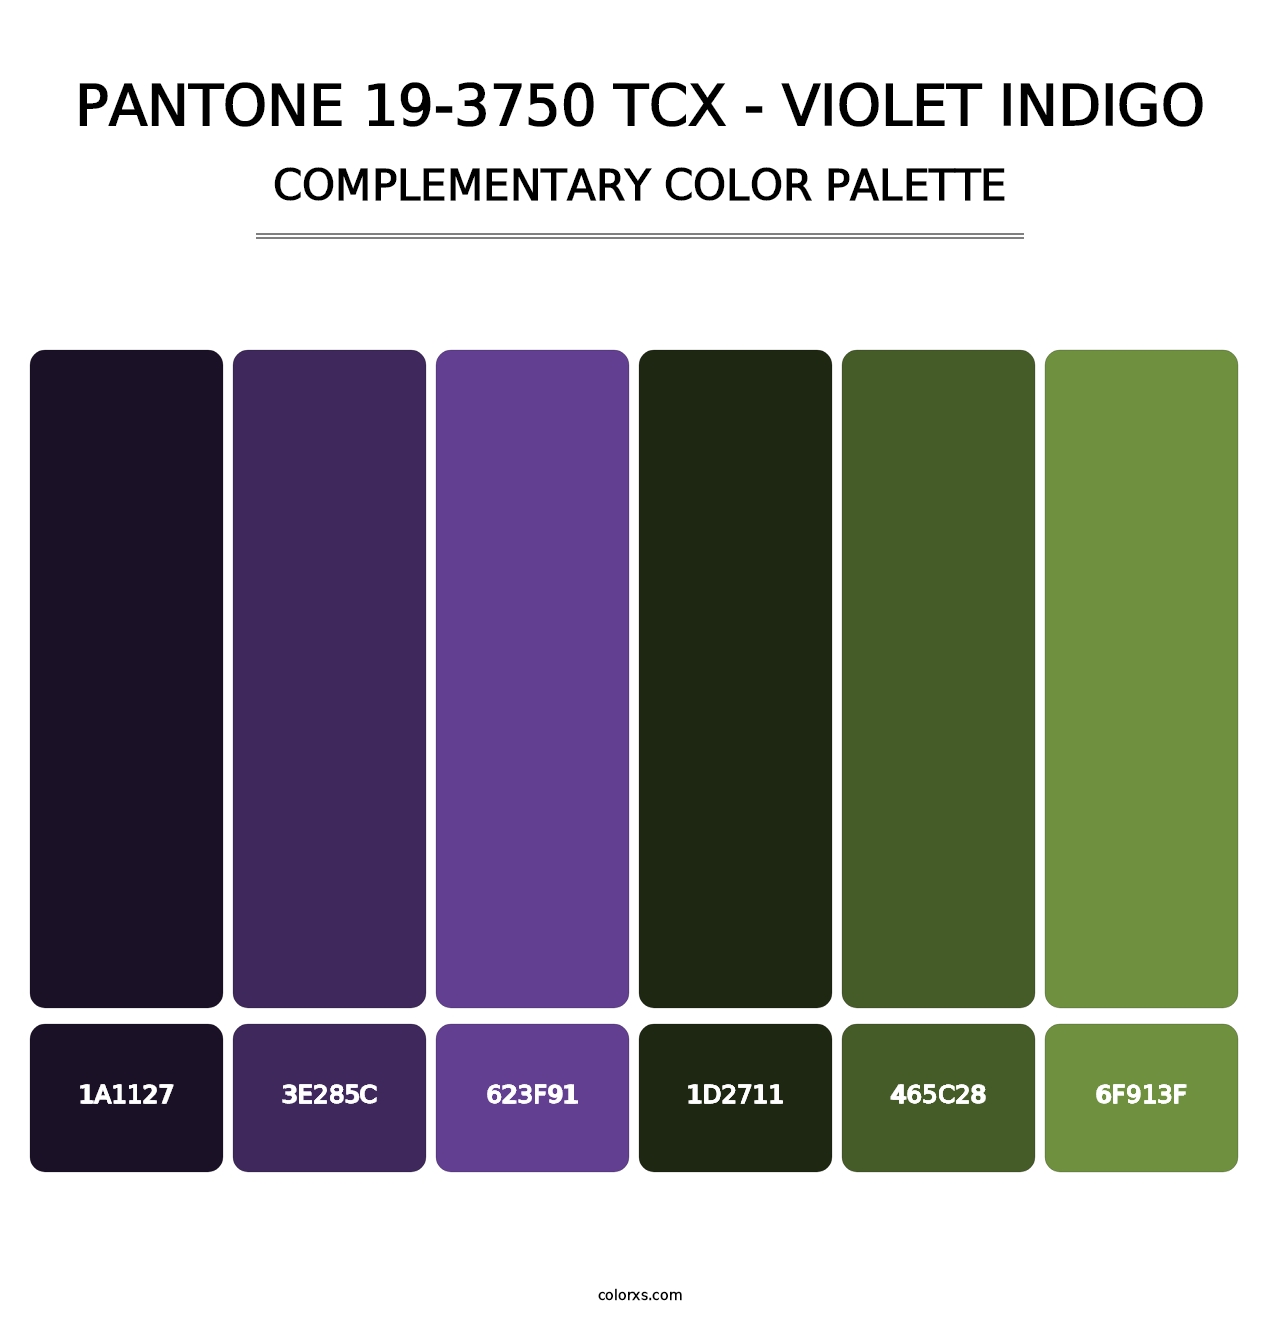 PANTONE 19-3750 TCX - Violet Indigo - Complementary Color Palette